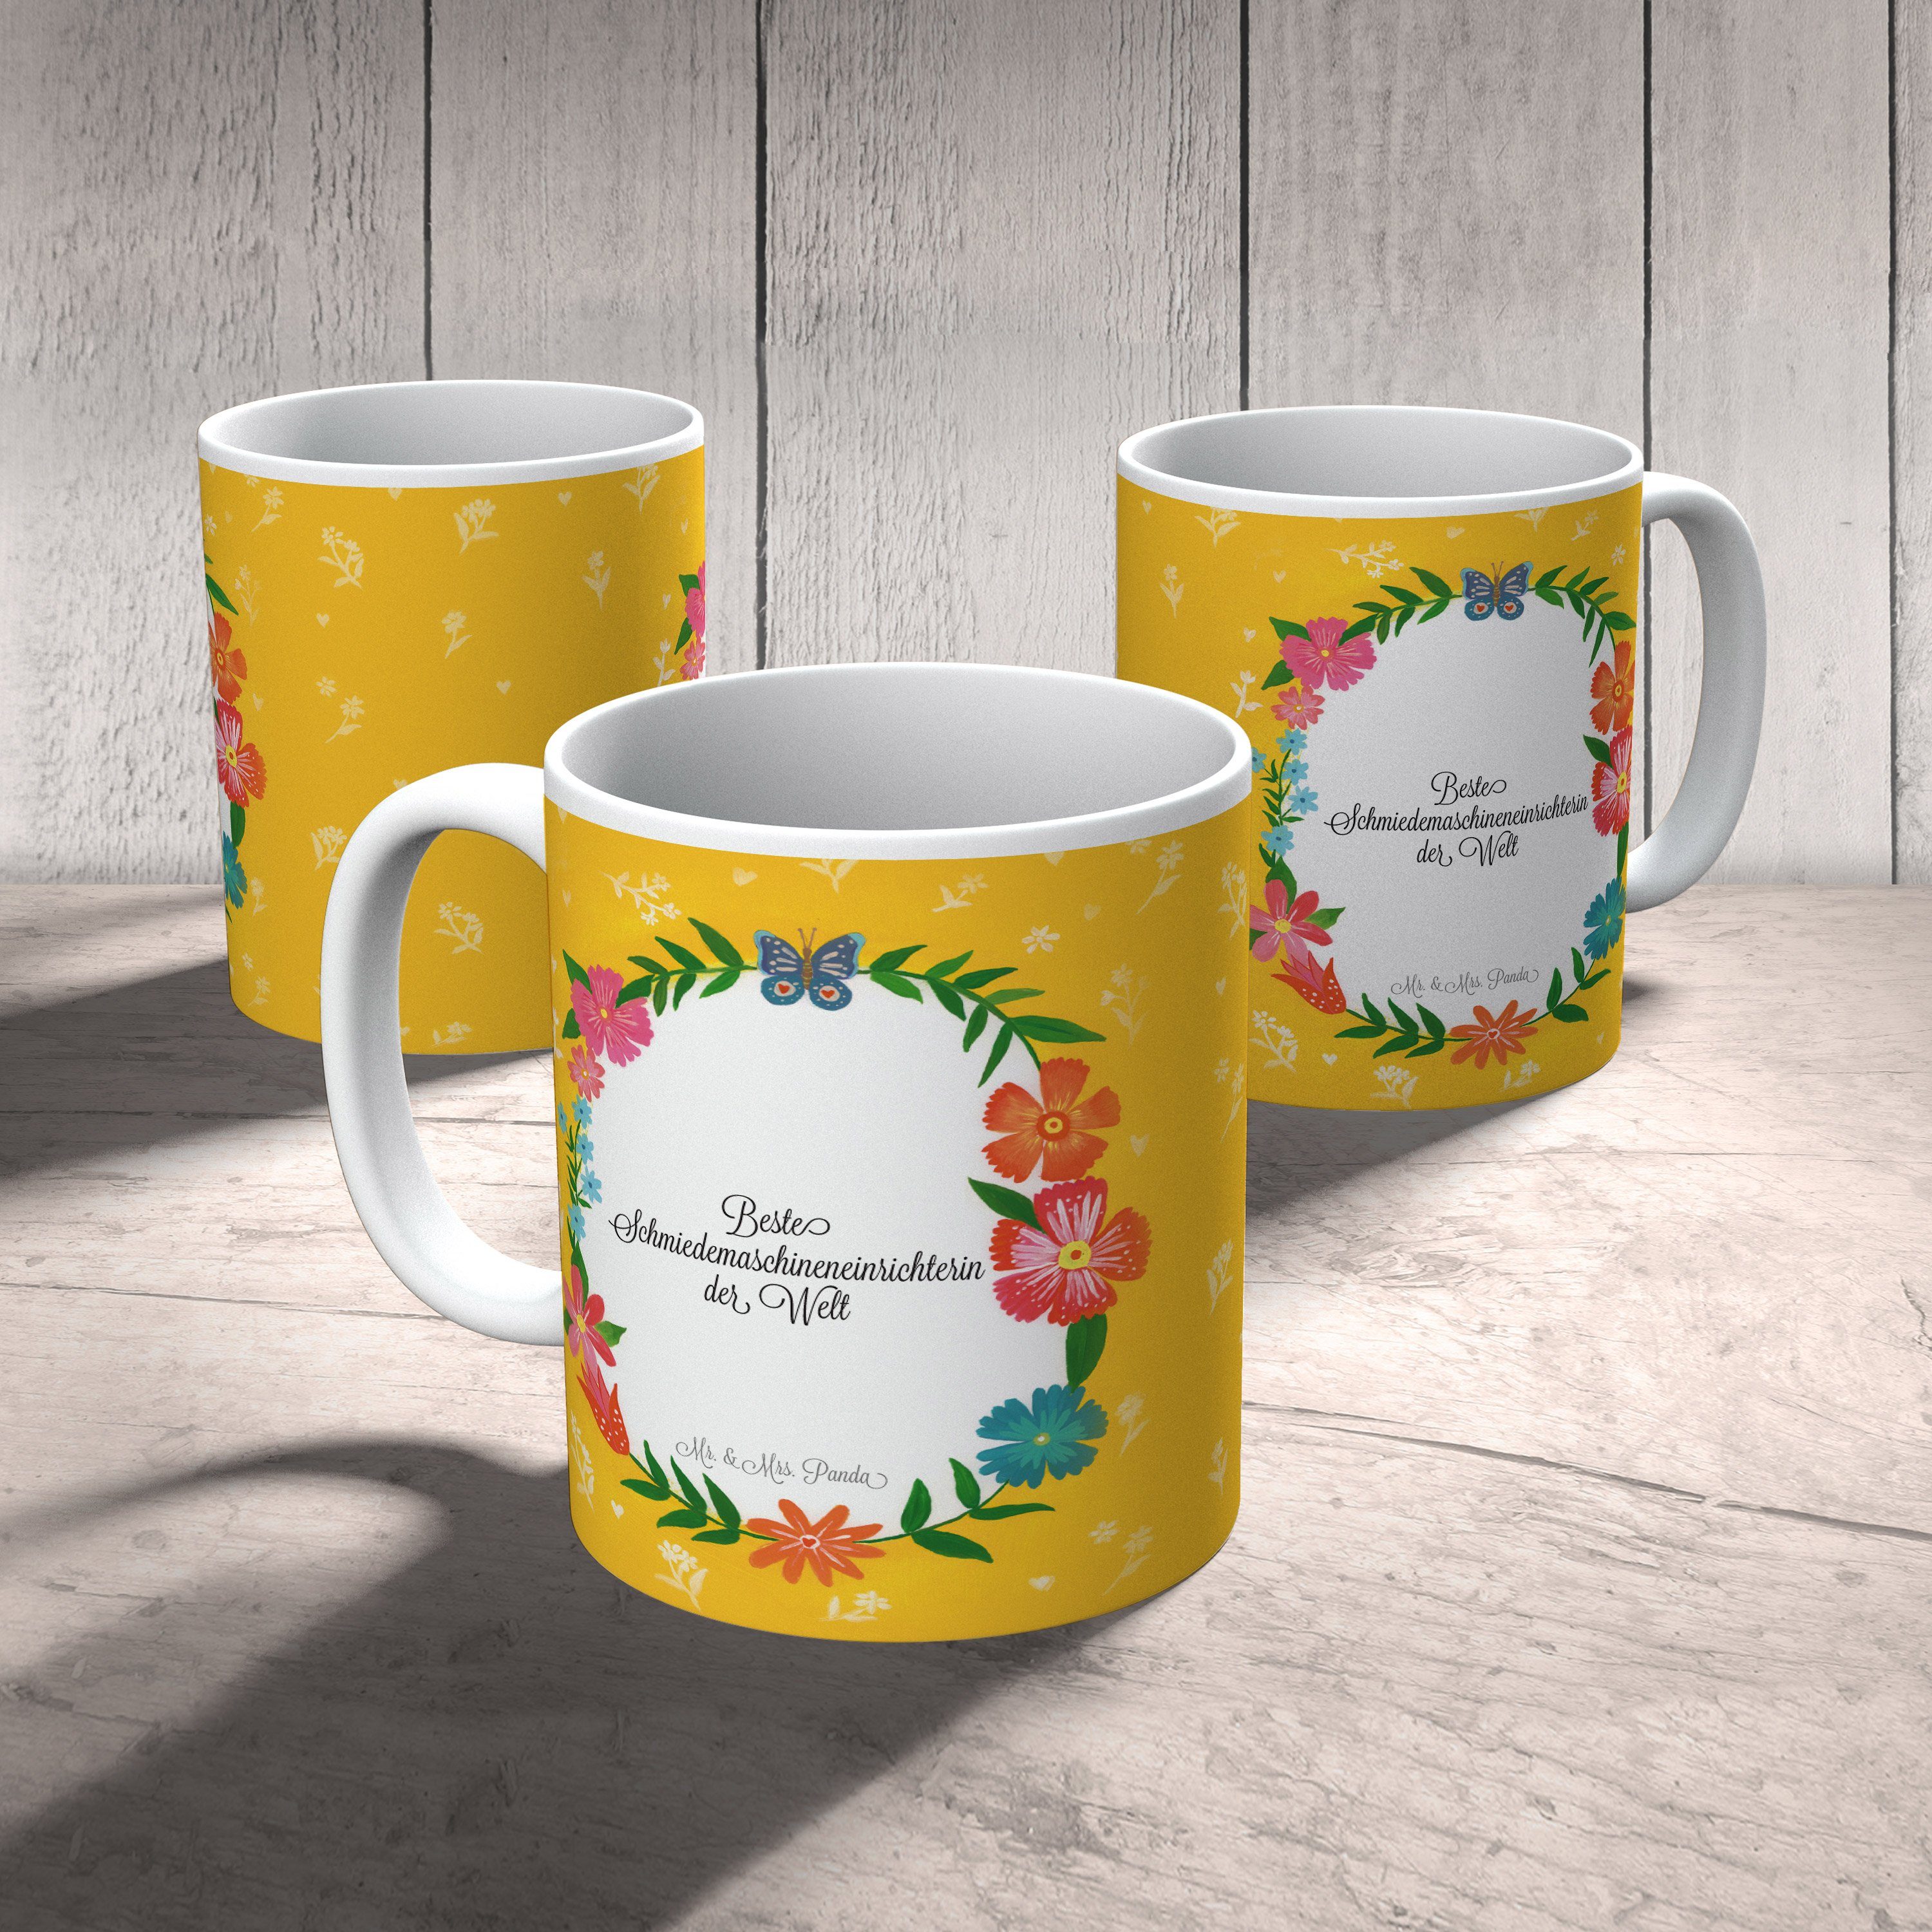 Tasse, Geschenk, Mr. Abschluss, & Panda Mrs. Schmiedemaschineneinrichterin Schenken, - Tasse Keramik